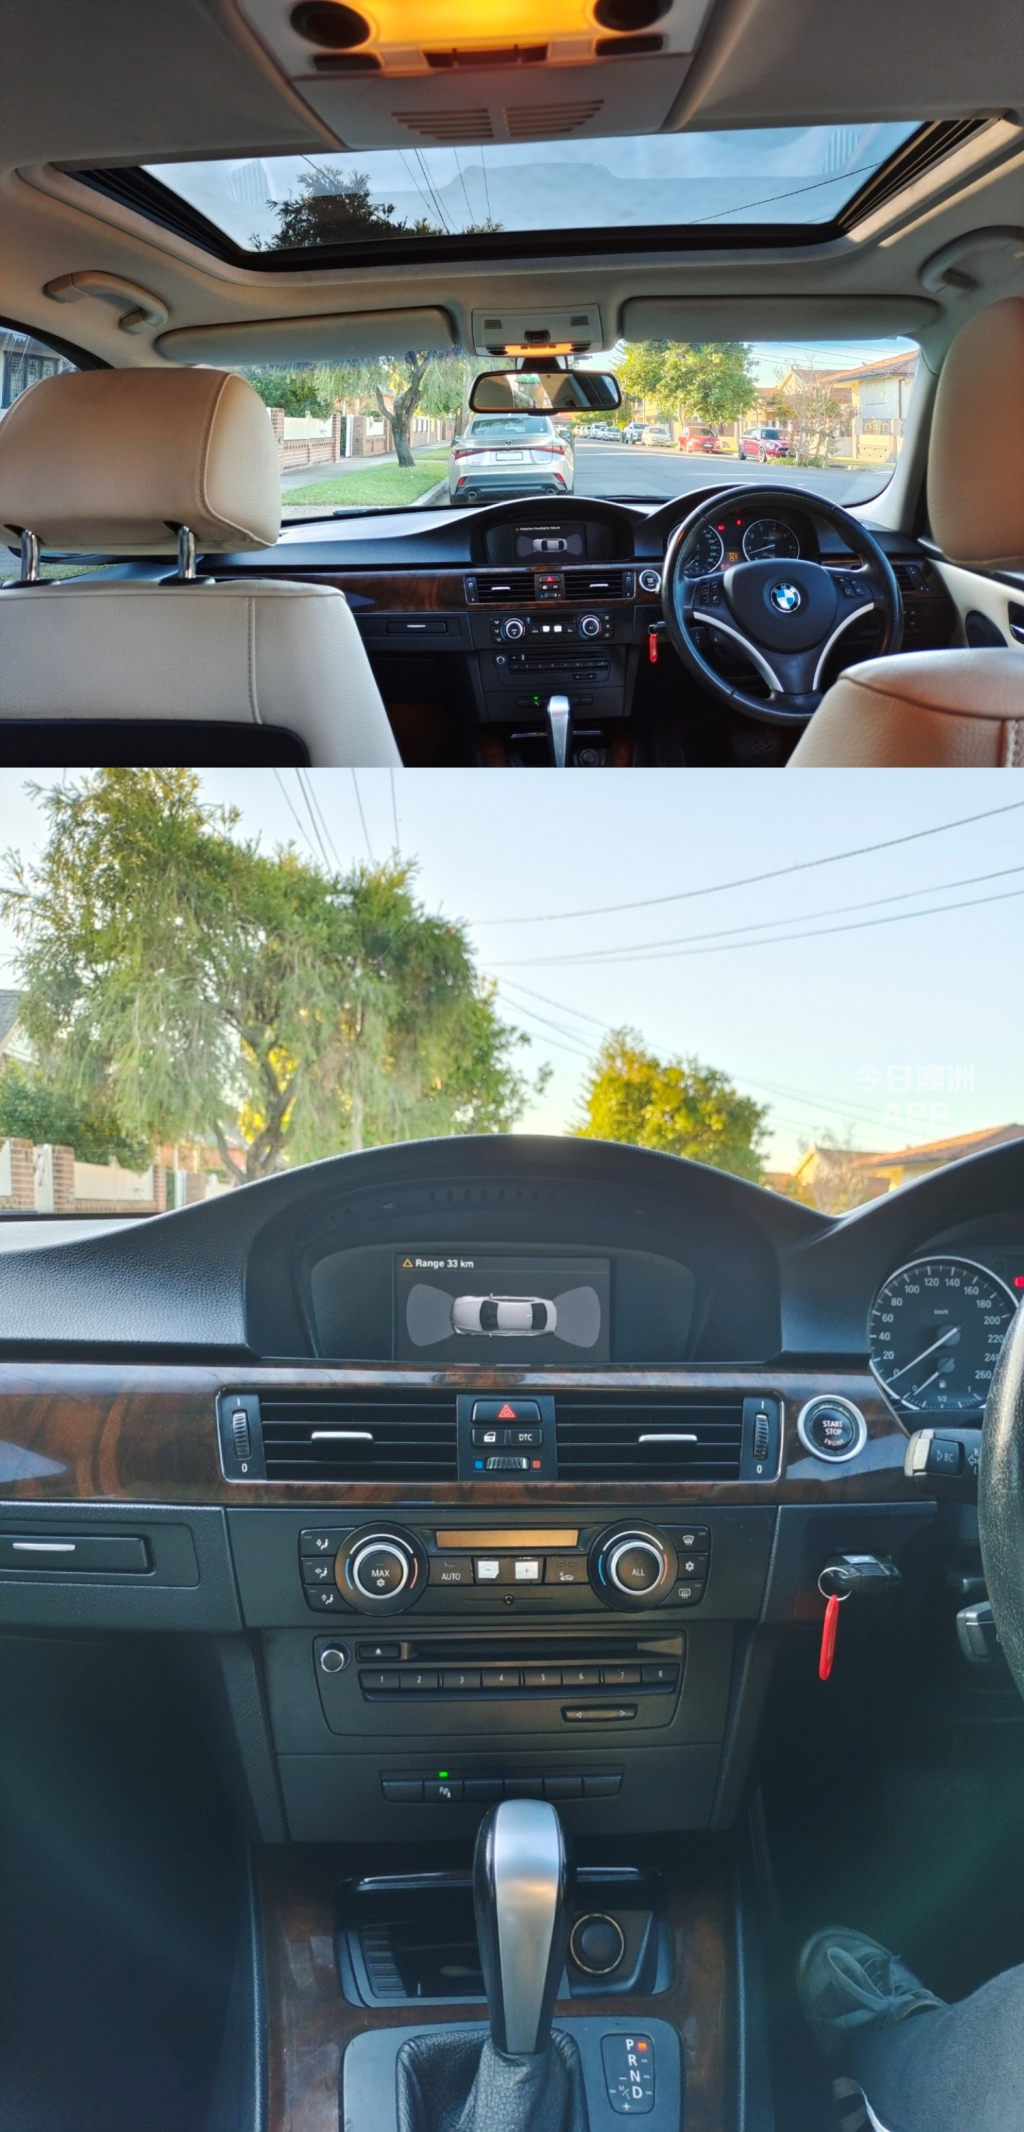 2010 BMW 320i外观设计优雅流畅 豪华舒适 感兴趣私聊